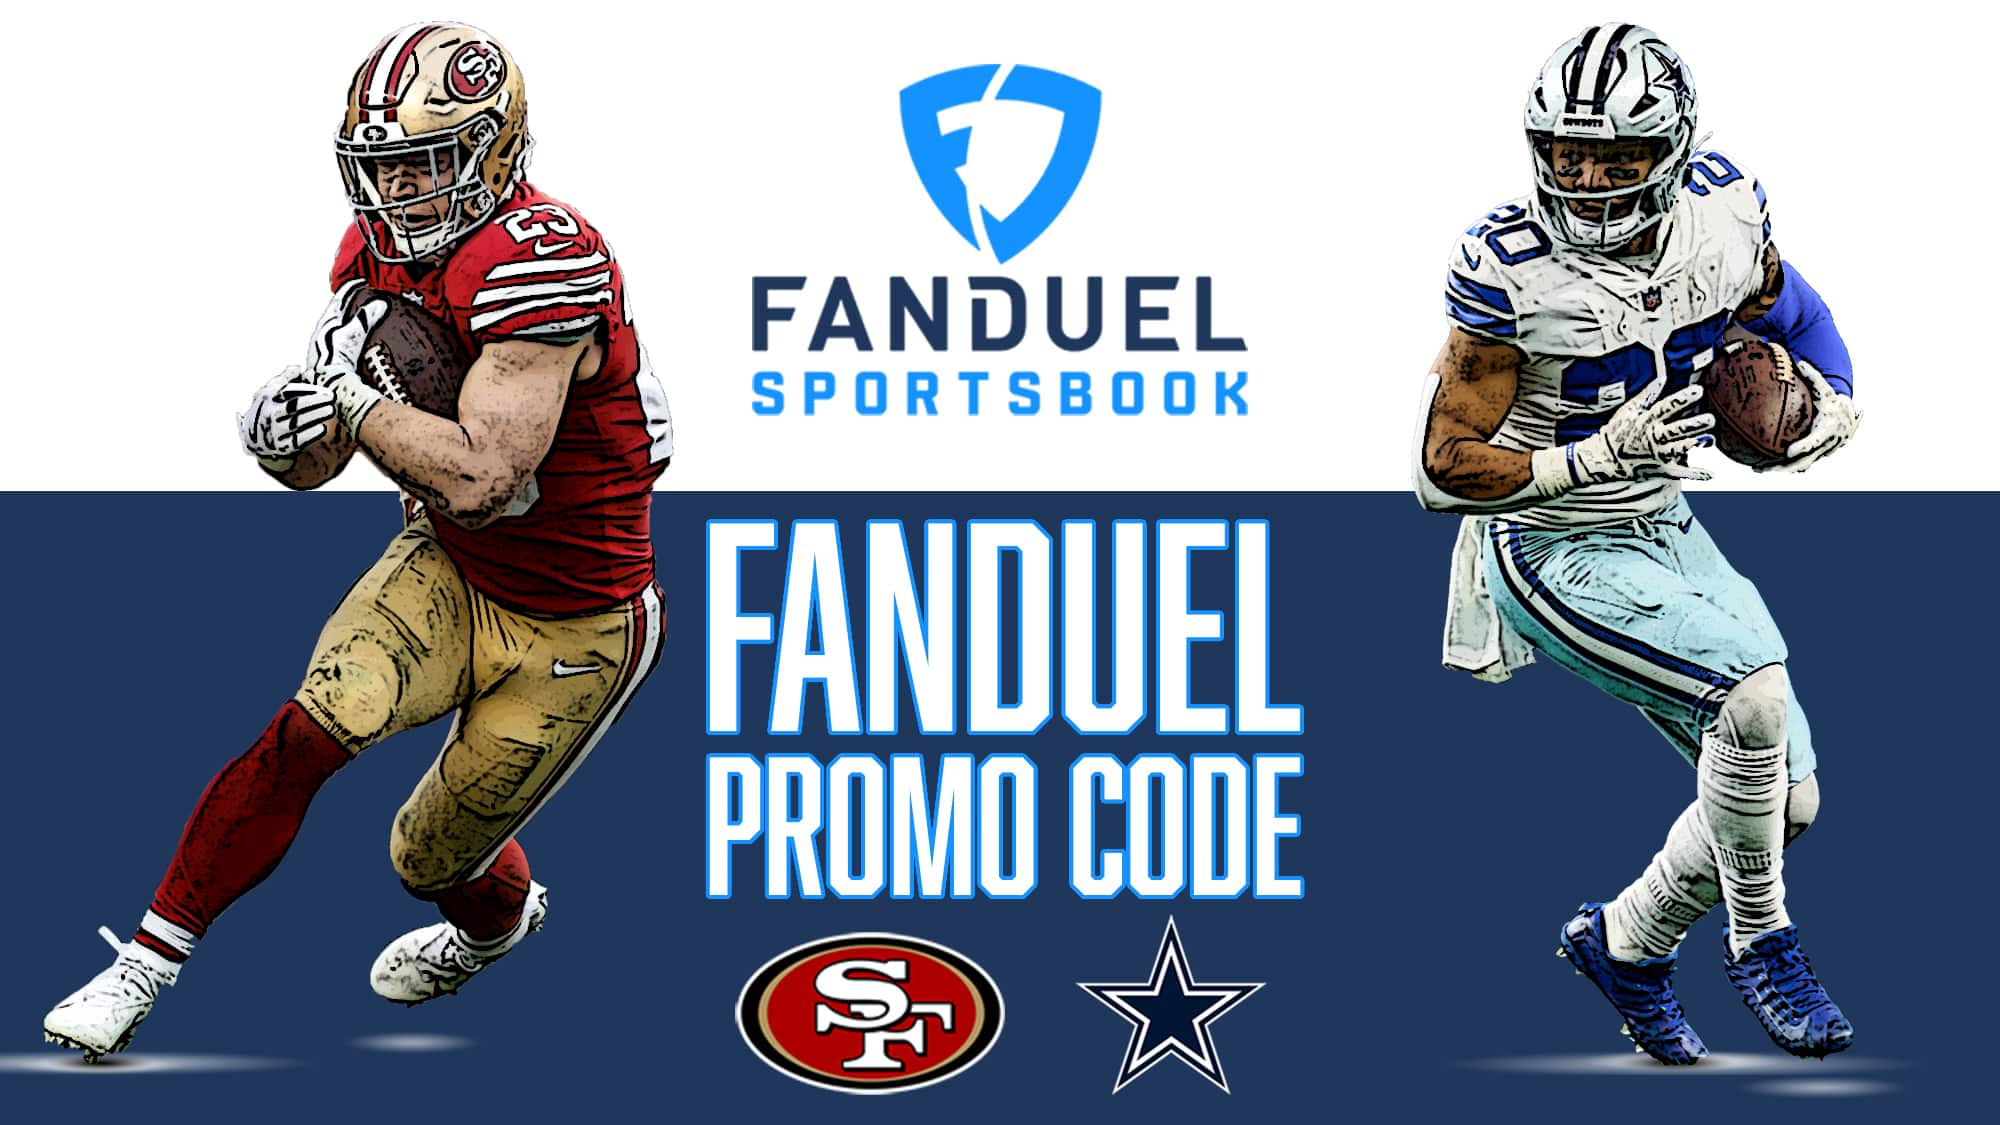 FanDuel Promo Code, San Francisco 49ers, Dallas Cowboys, NFL playoffs, Christian McCaffrey, Tony Pollard